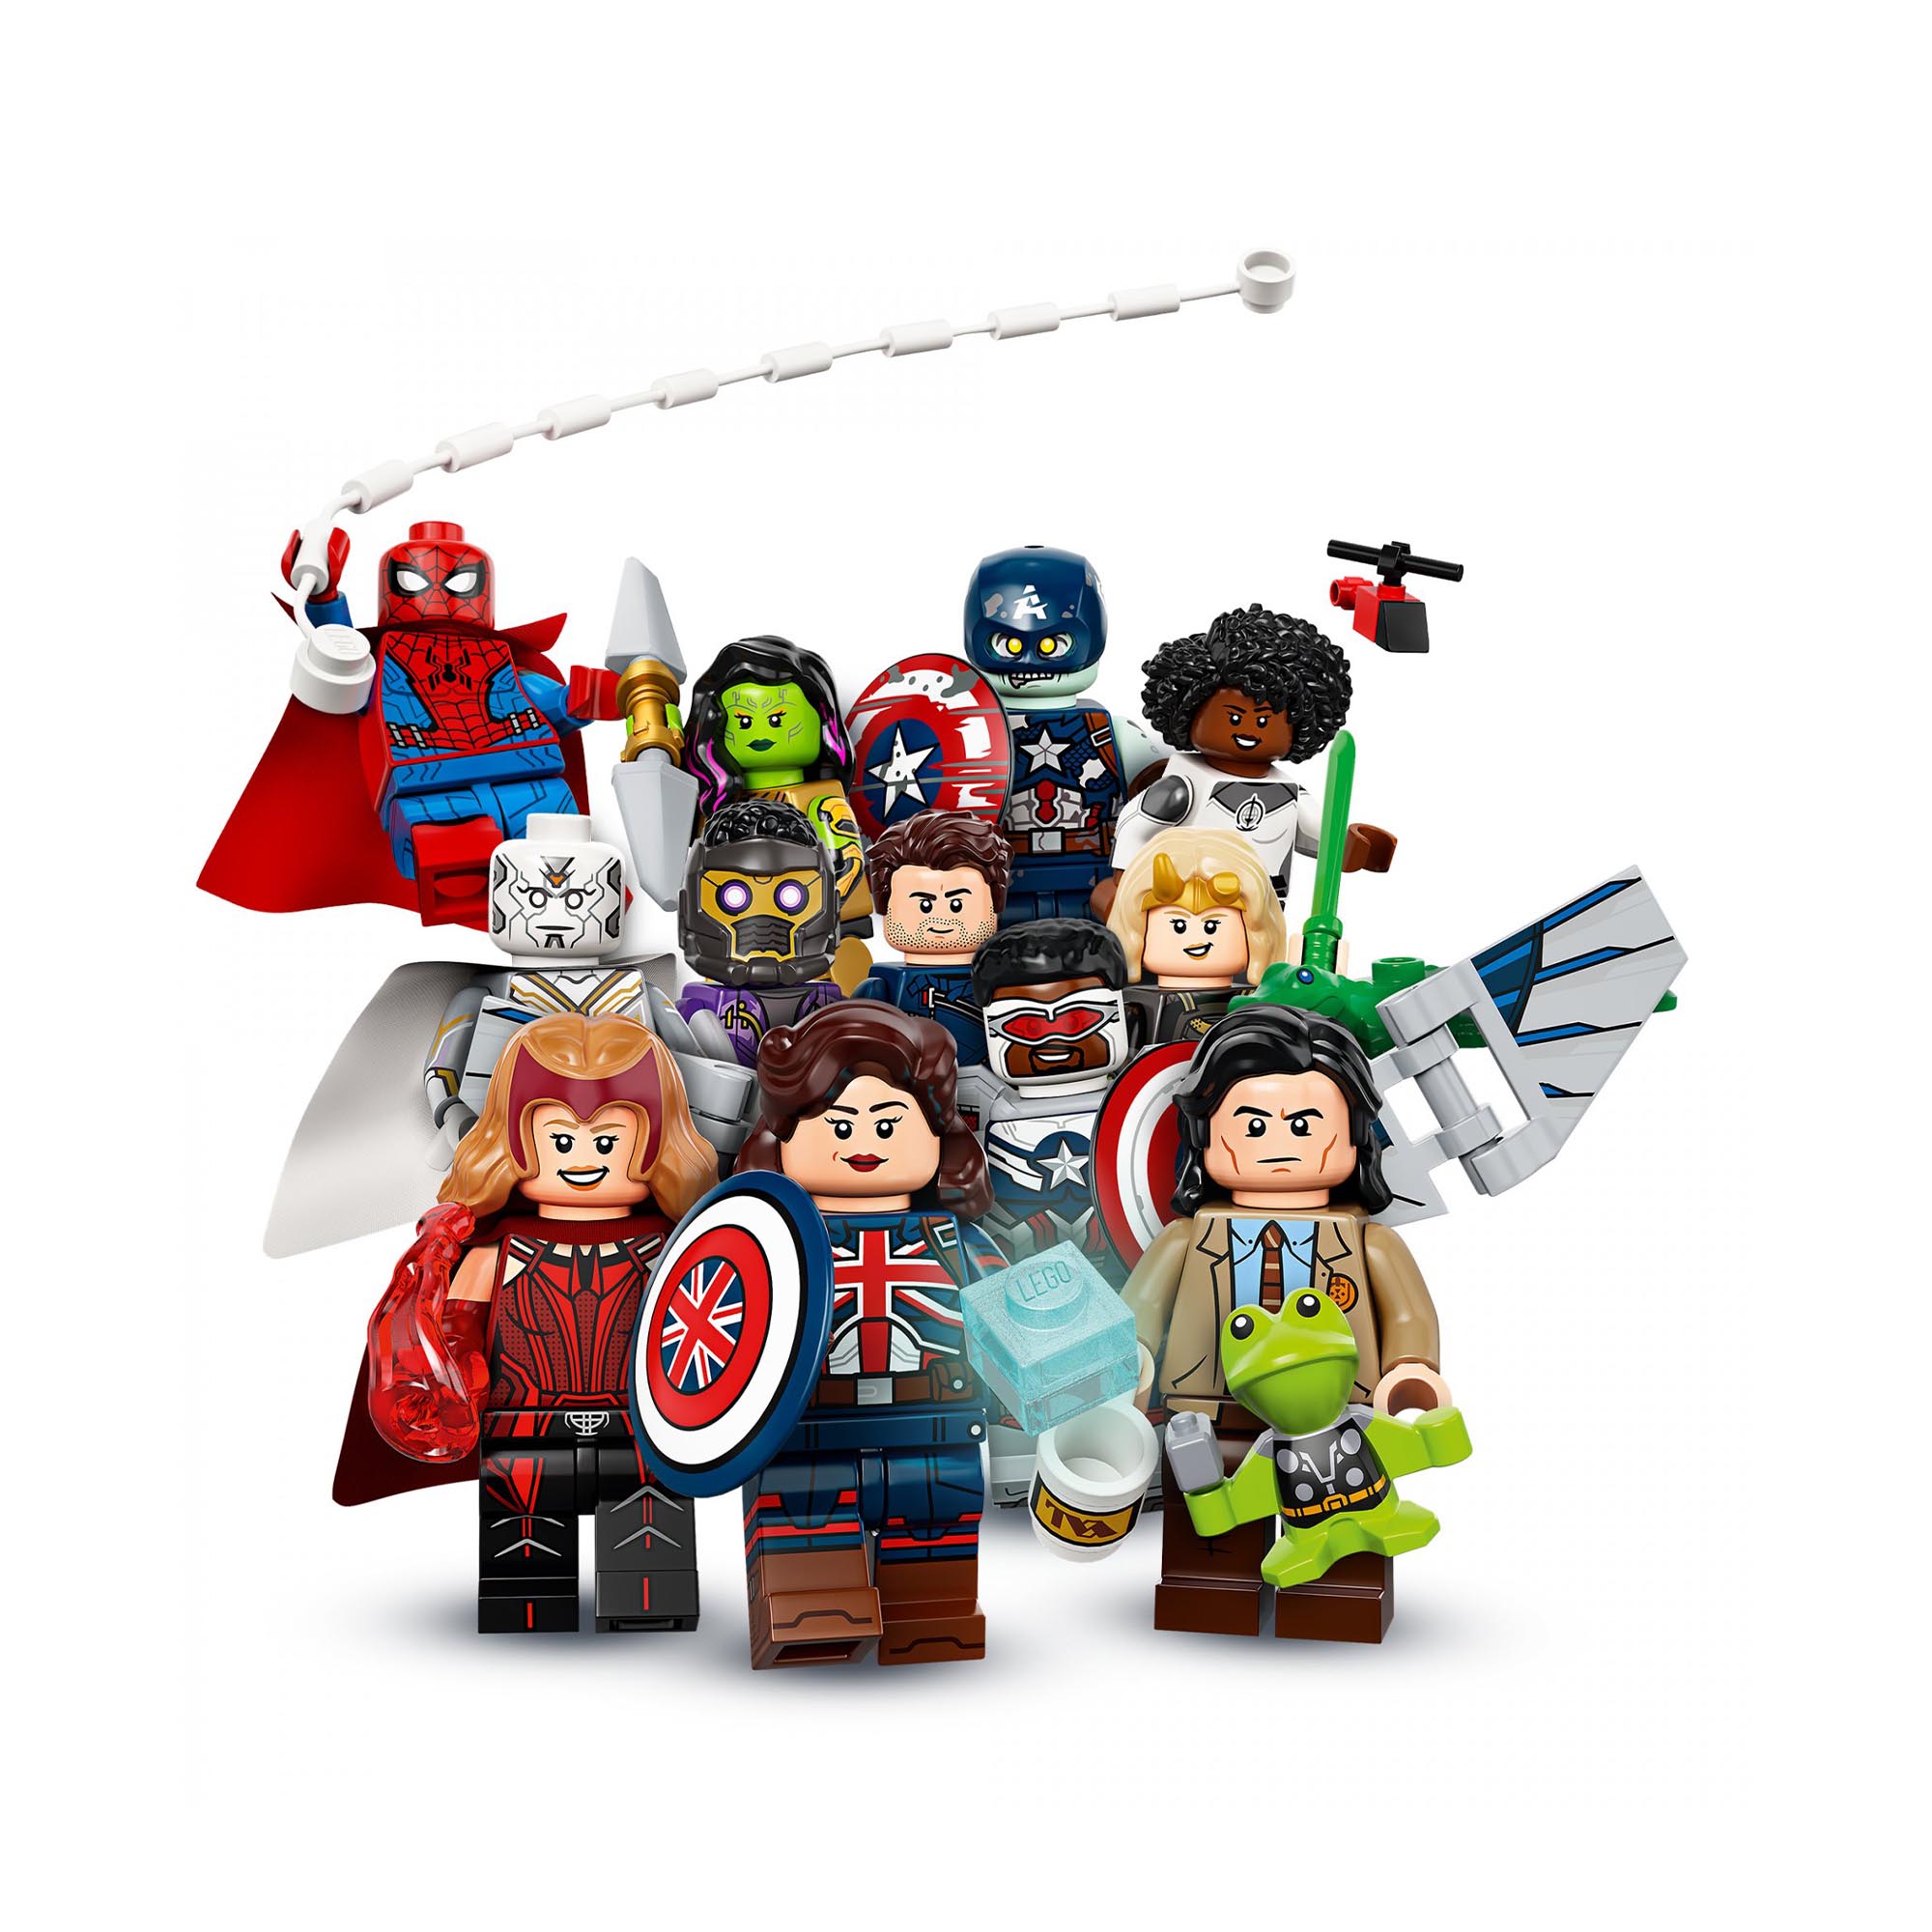 LEGO Minifigures Marvel Studios, Giocattolo Creativo Supereroi, 1 di 12 Minifigu 71031, , large